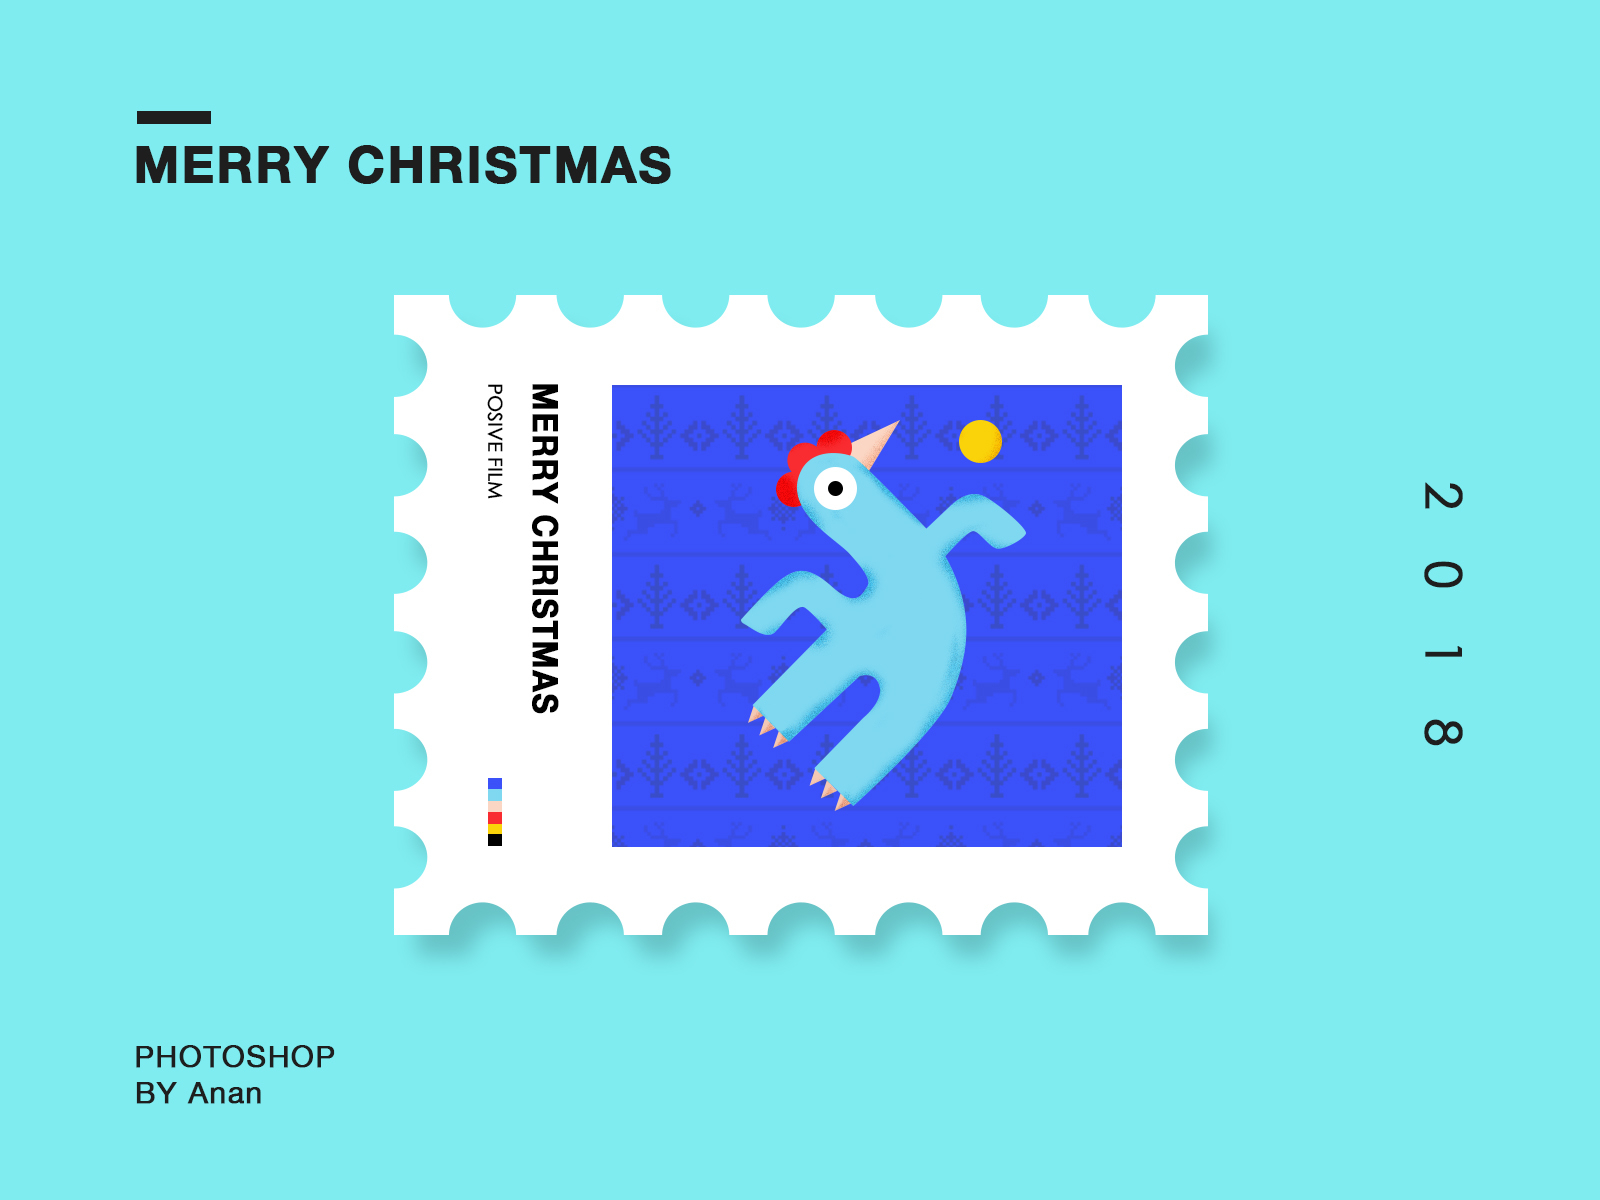 邮票插画系列 可爱 圣诞节 快乐 插图 每日ui 简约 设计